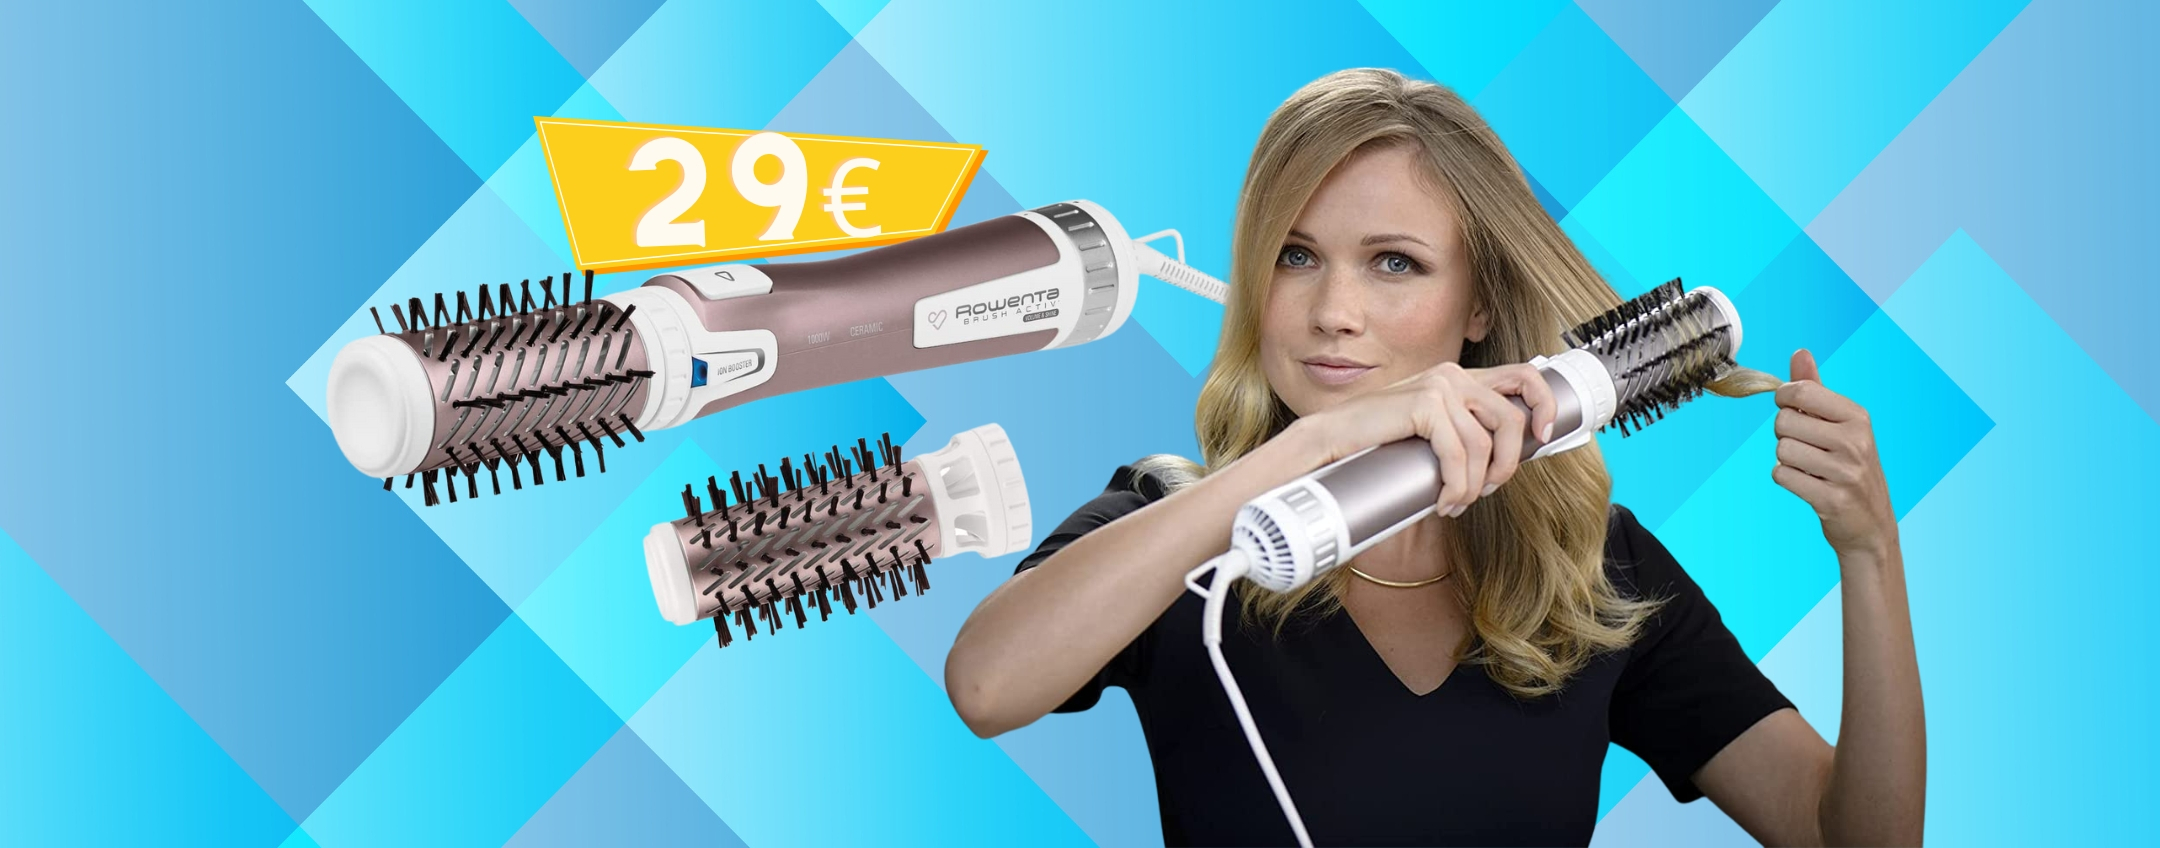 Rowenta: spazzola modellante a prezzo MINUSCOLO (29€)